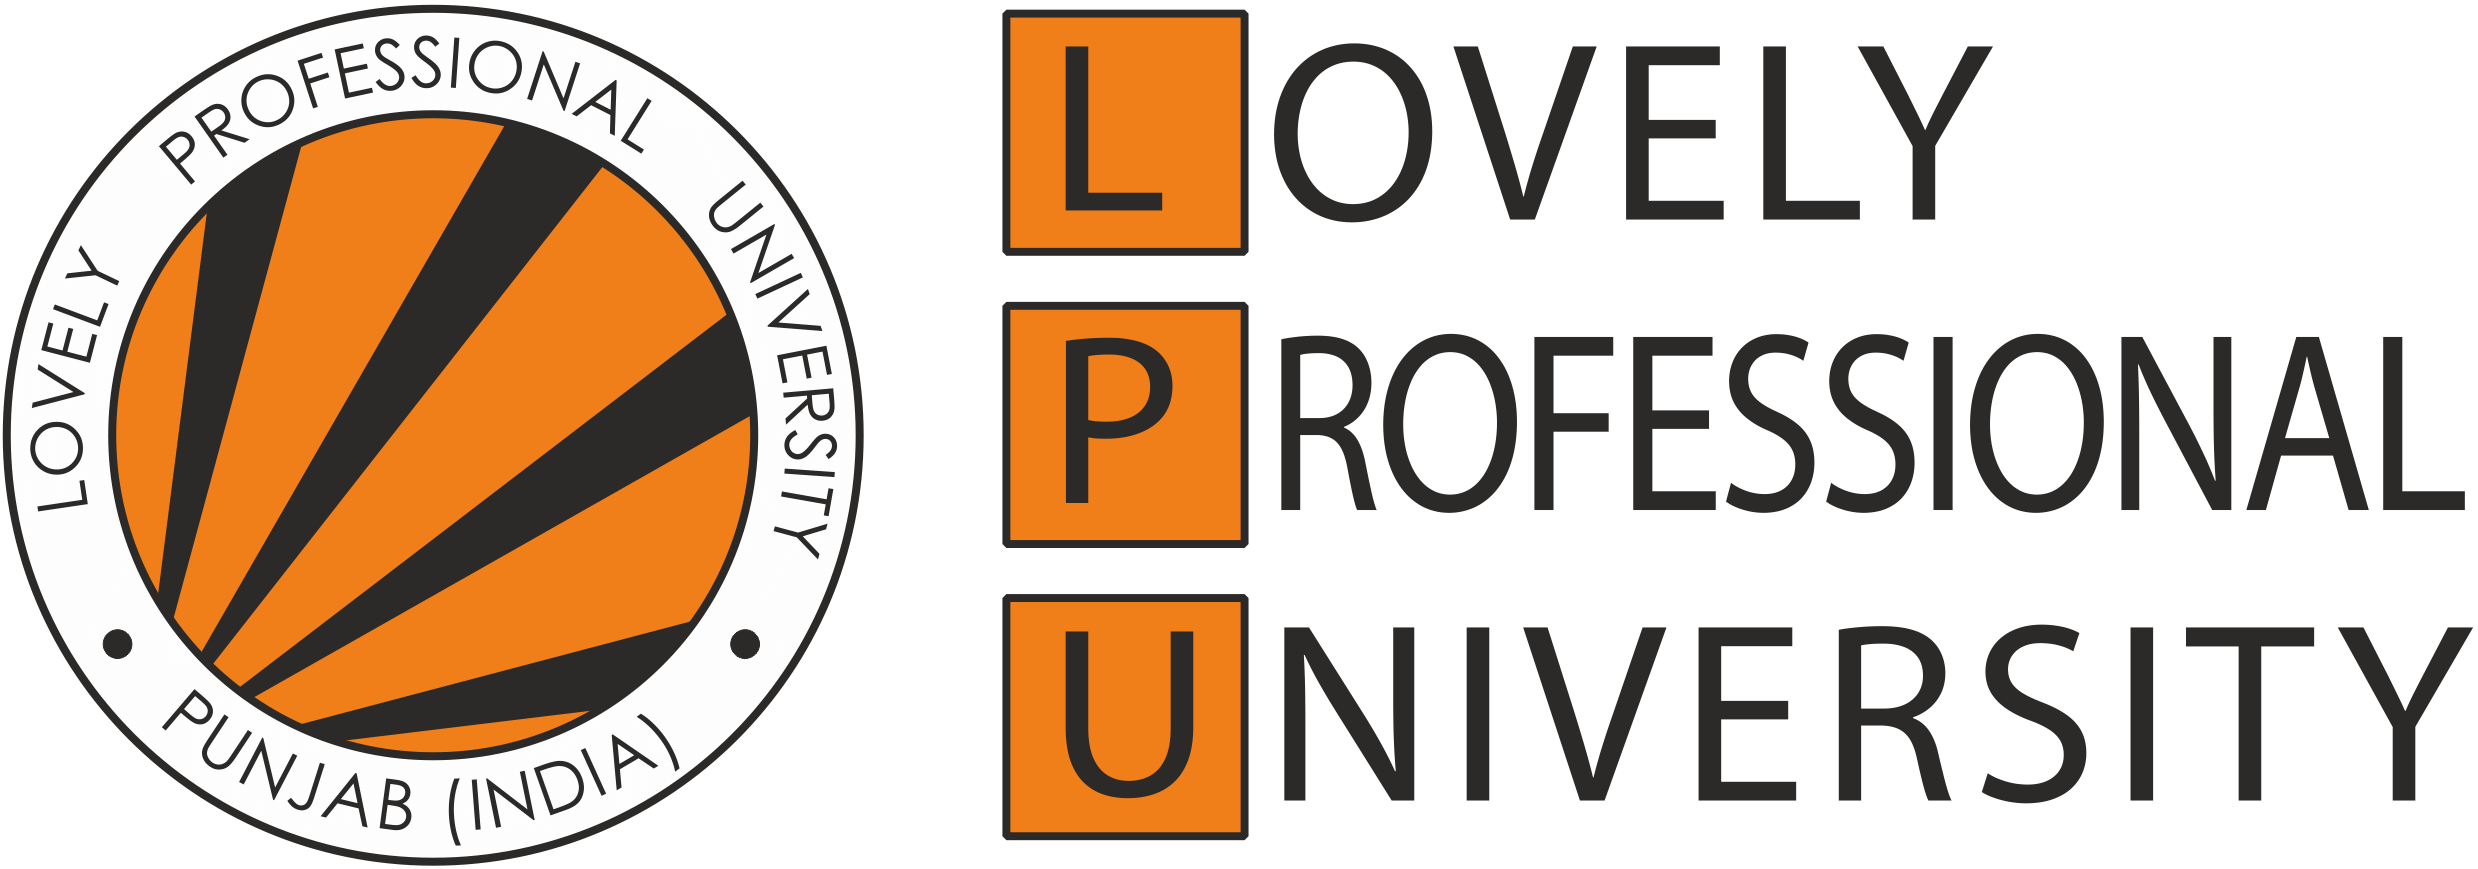 LPU Logo - Lovely Professional University